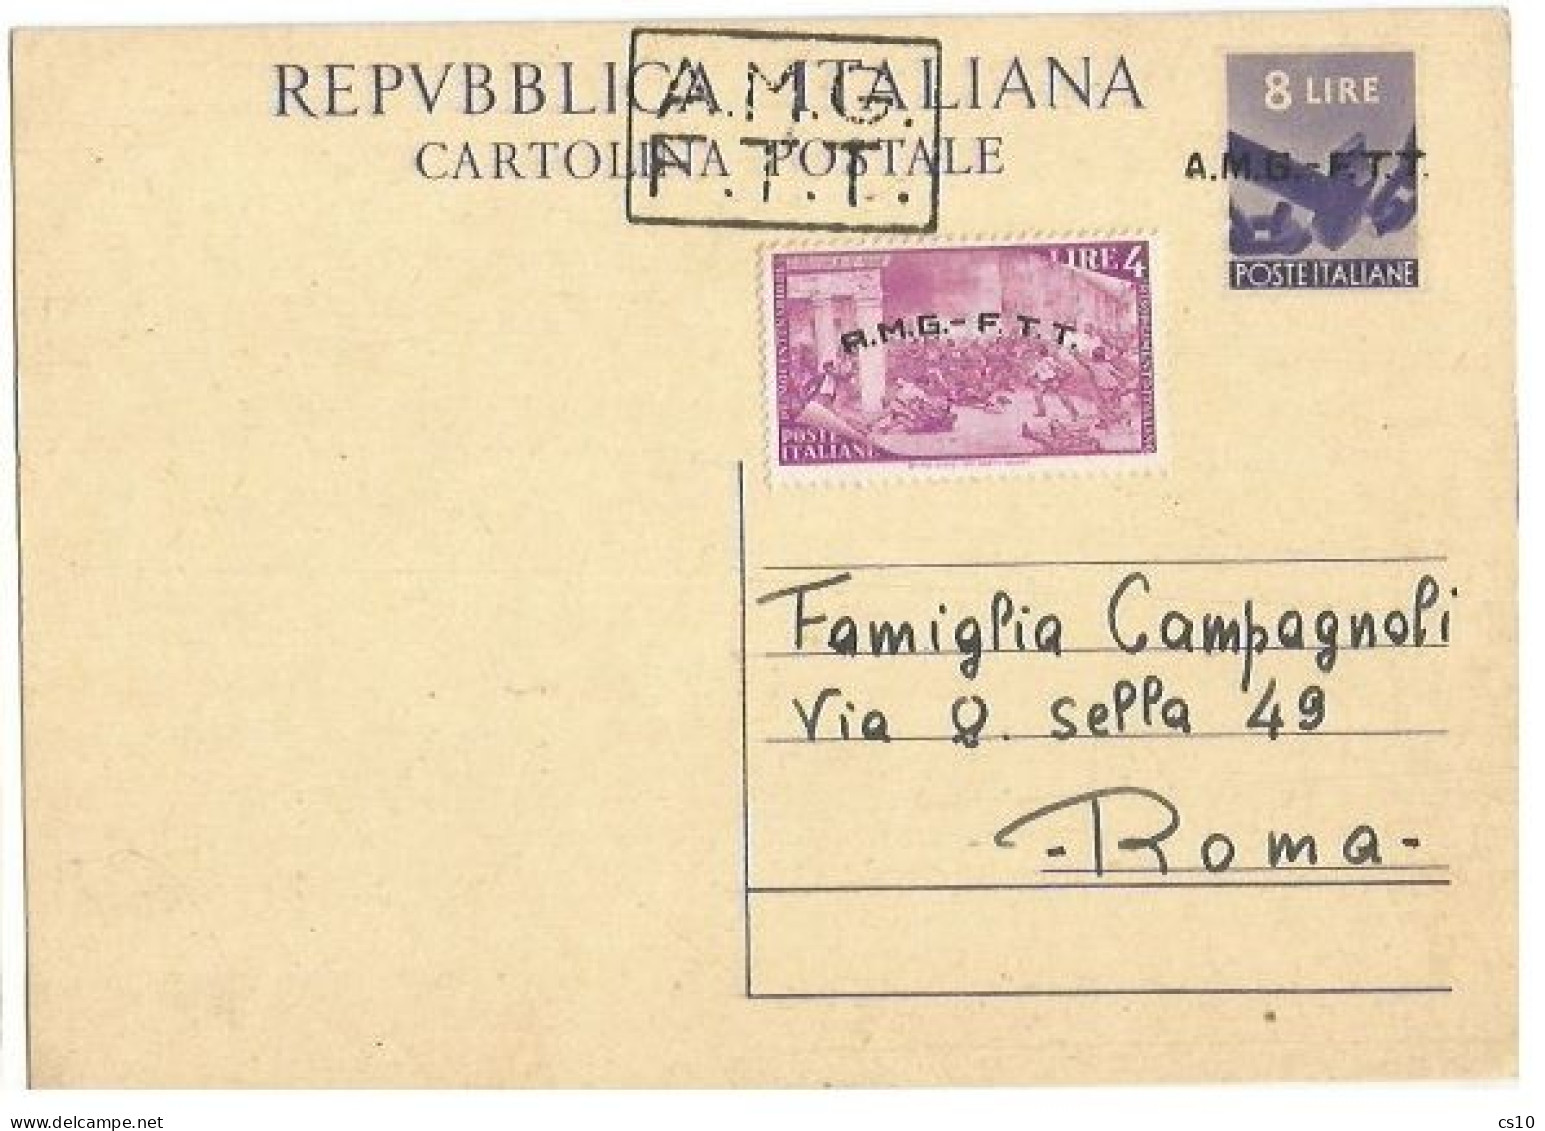 Trieste "A" AMG-FTT 1947 Cart.Postale Democratica L.8 #C2A Soprast.A+B + Risorgimento L.4 Nuova Intestata NON VIAGGIATA - Marcofilie